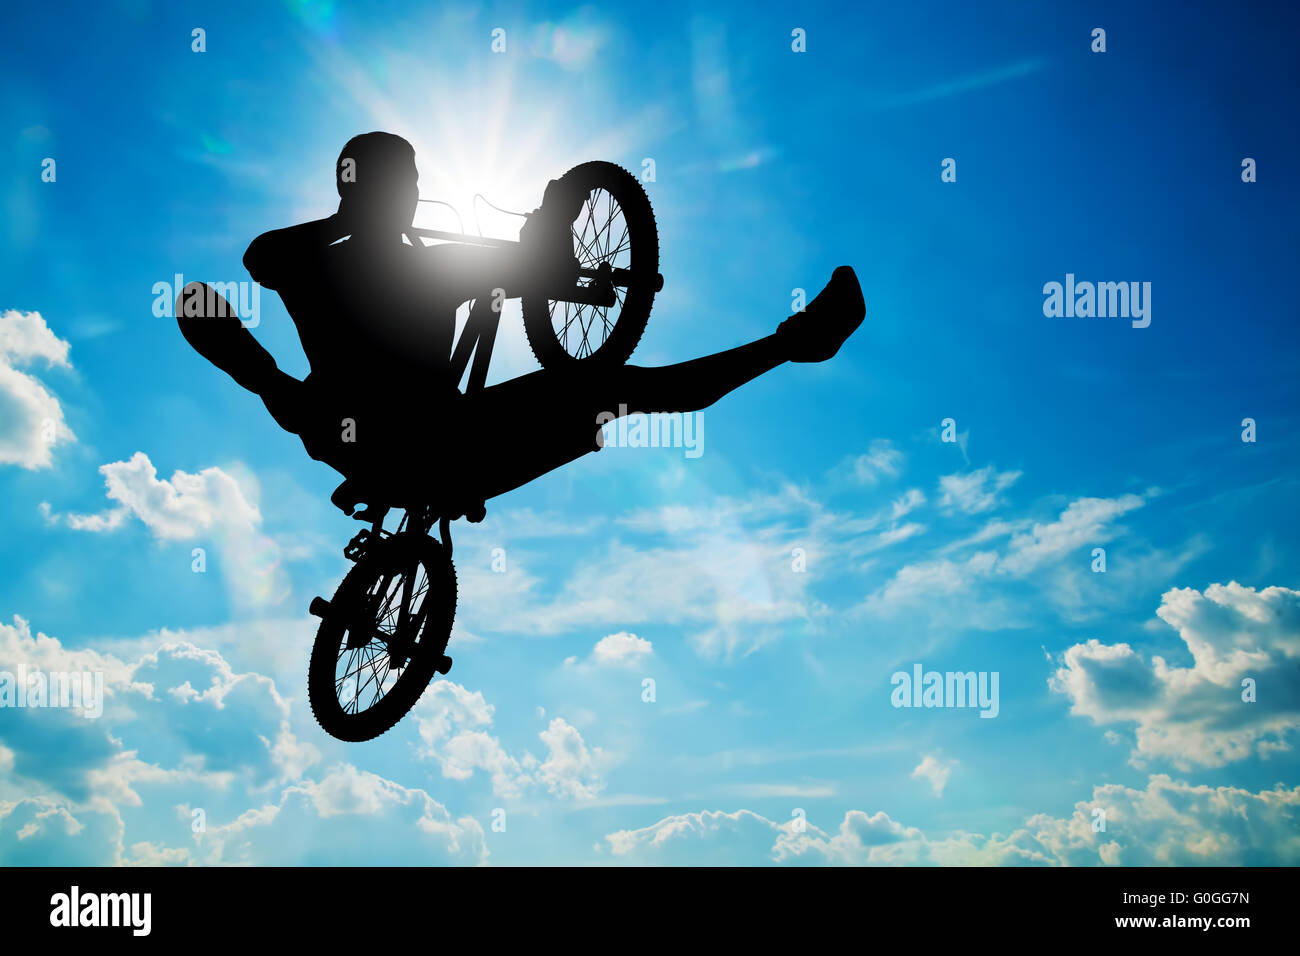 Mann springt auf bmx-Bike einen Trick gegen sonnigen Himmel durchführen. Extreme sport Stockfoto